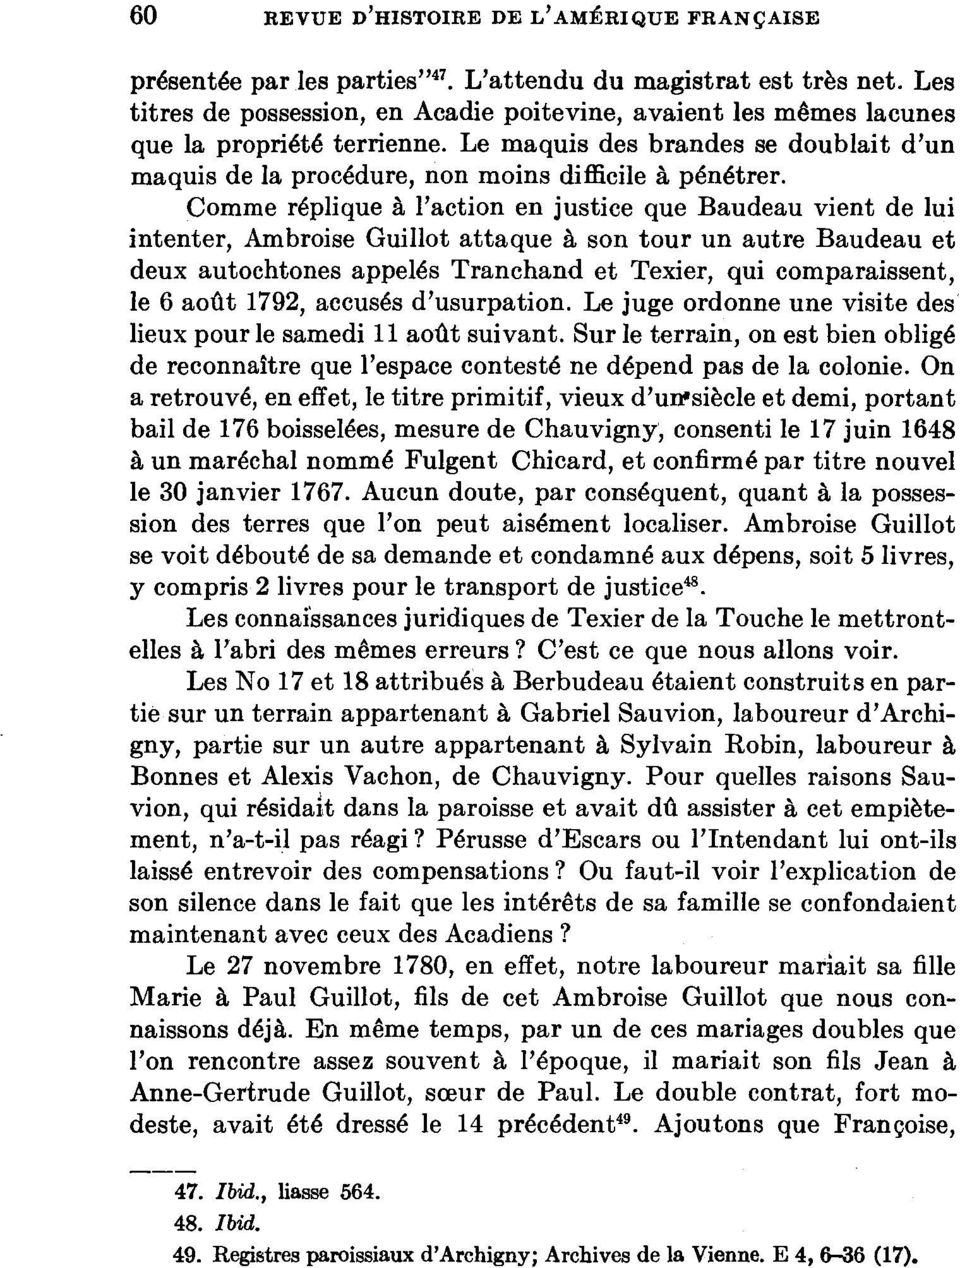 Comme réplique à l'action en justice que Baudeau vient de lui intenter, Ambroise Guillot attaque à son tour un autre Baudeau et deux autochtones appelés Tranchand et Texier, qui comparaissent, le 6